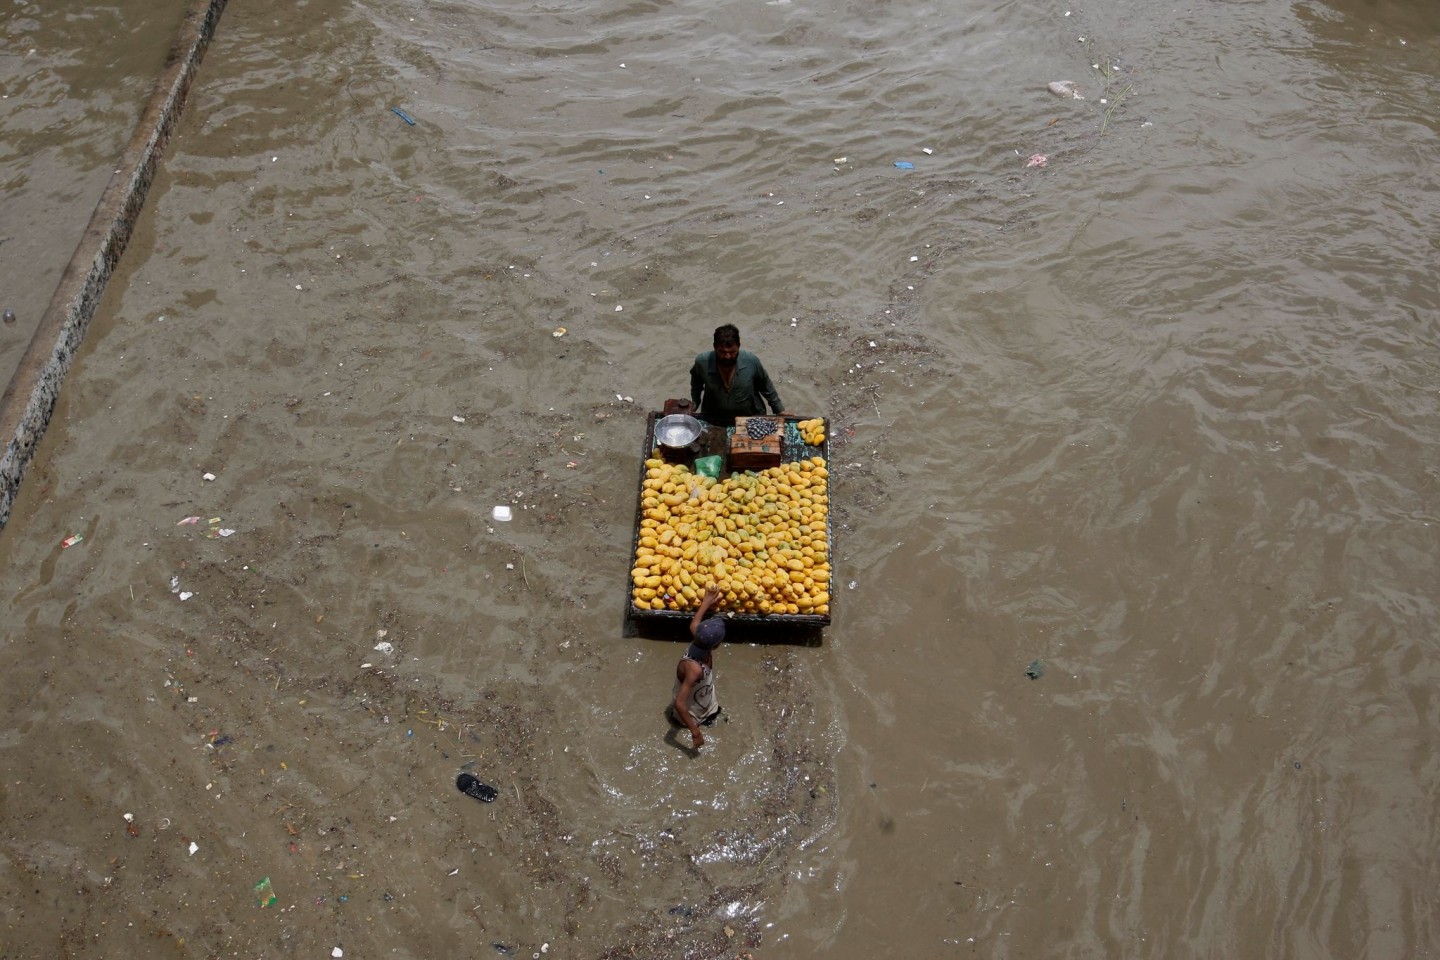 Ein Obstverkäufer geht nach heftigen Regenfällen durch eine überschwemmte Straße in Karachi.